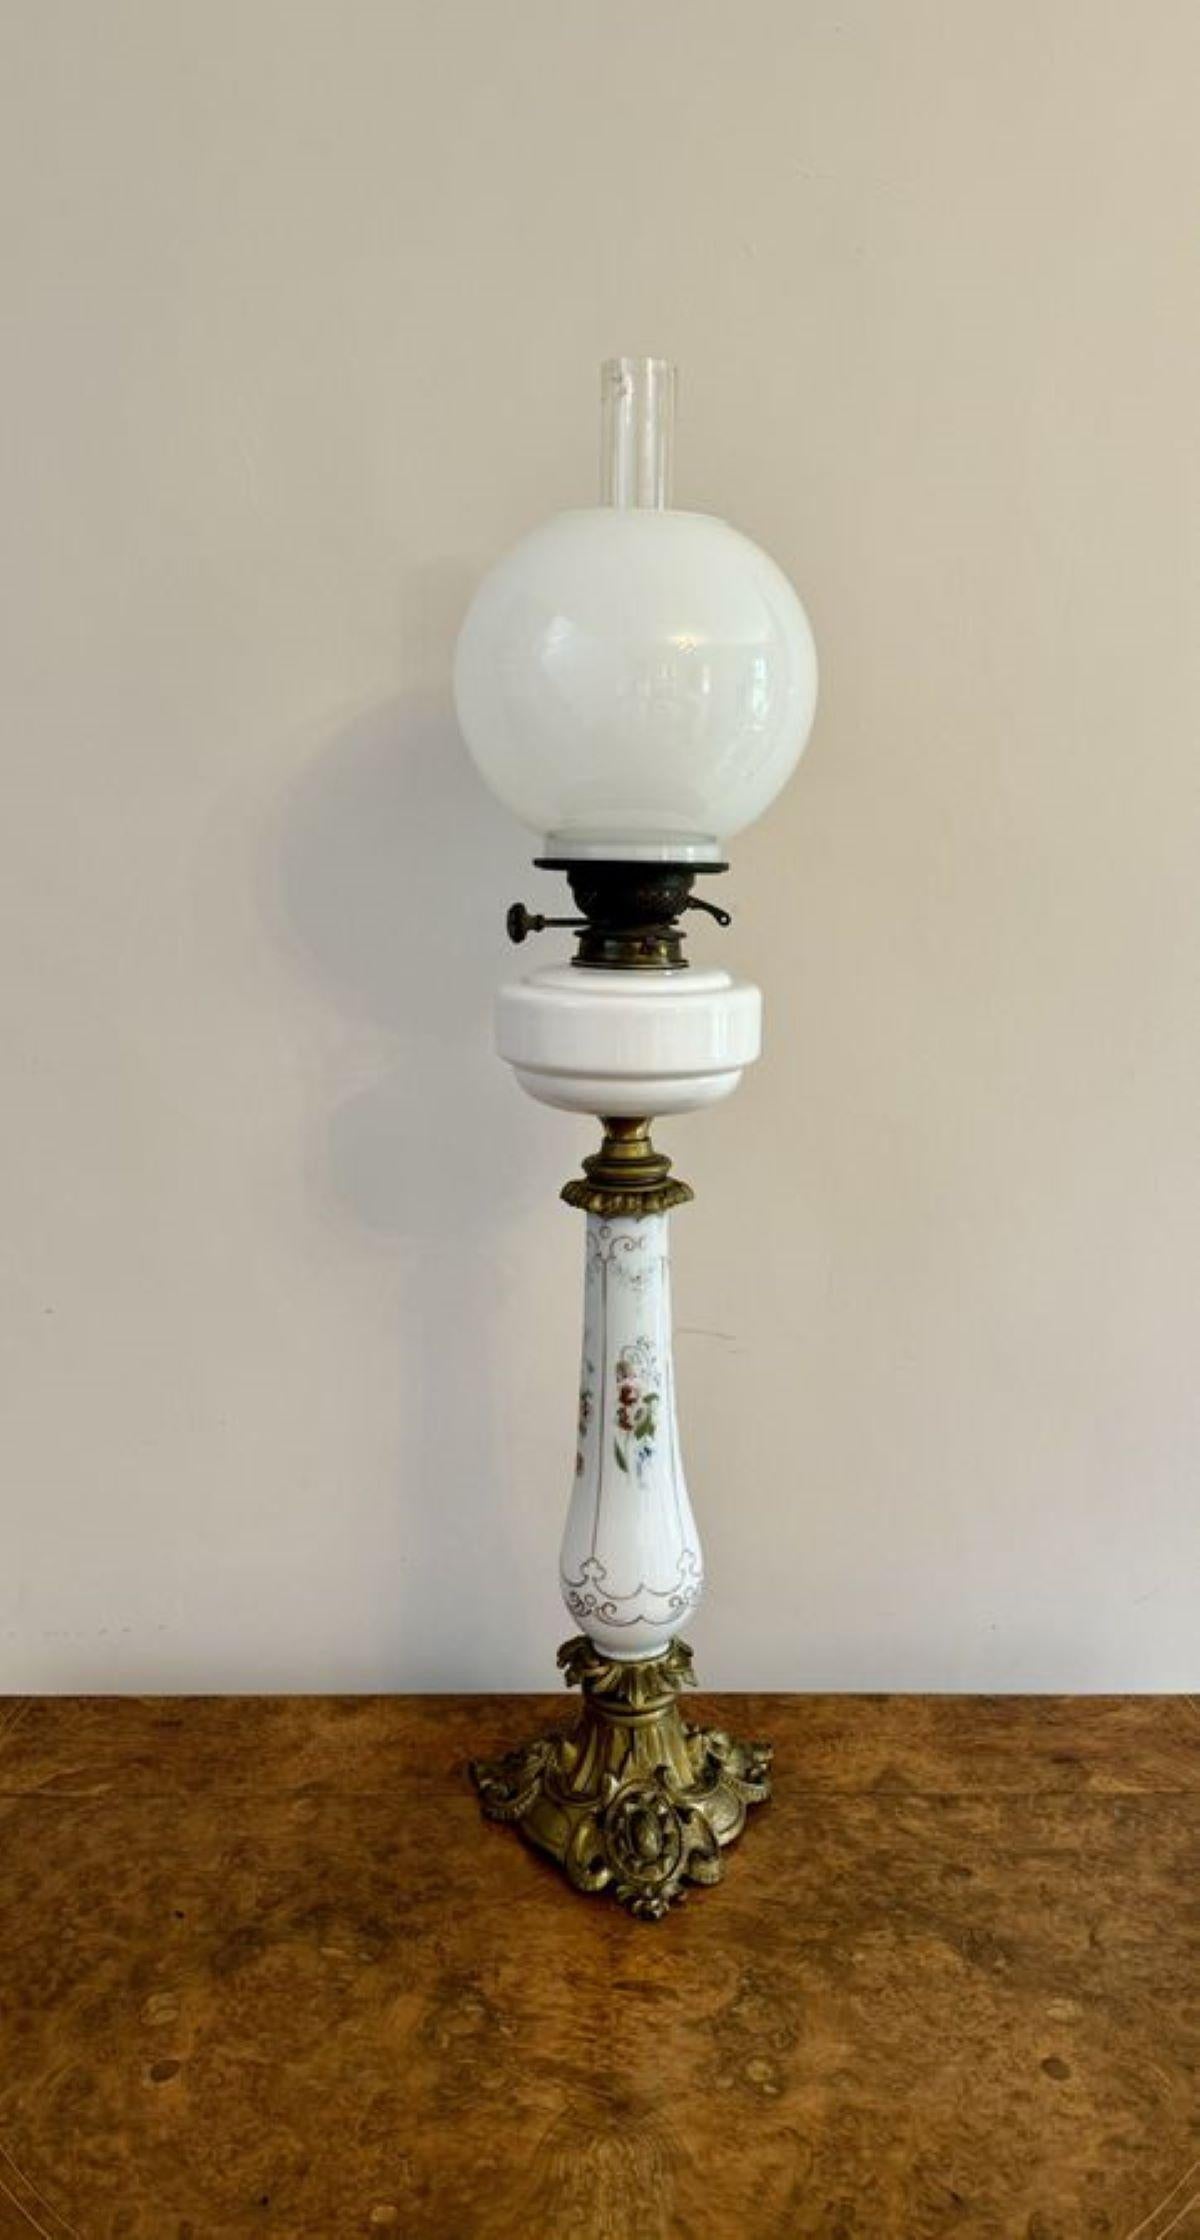 Fantastique lampe à huile victorienne ancienne de qualité, ayant un double brûleur, avec un globe en verre blanc et une cheminée en verre au-dessus d'un réservoir en verre blanc avec une colonne décorée de fleurs peintes à la main dans des couleurs